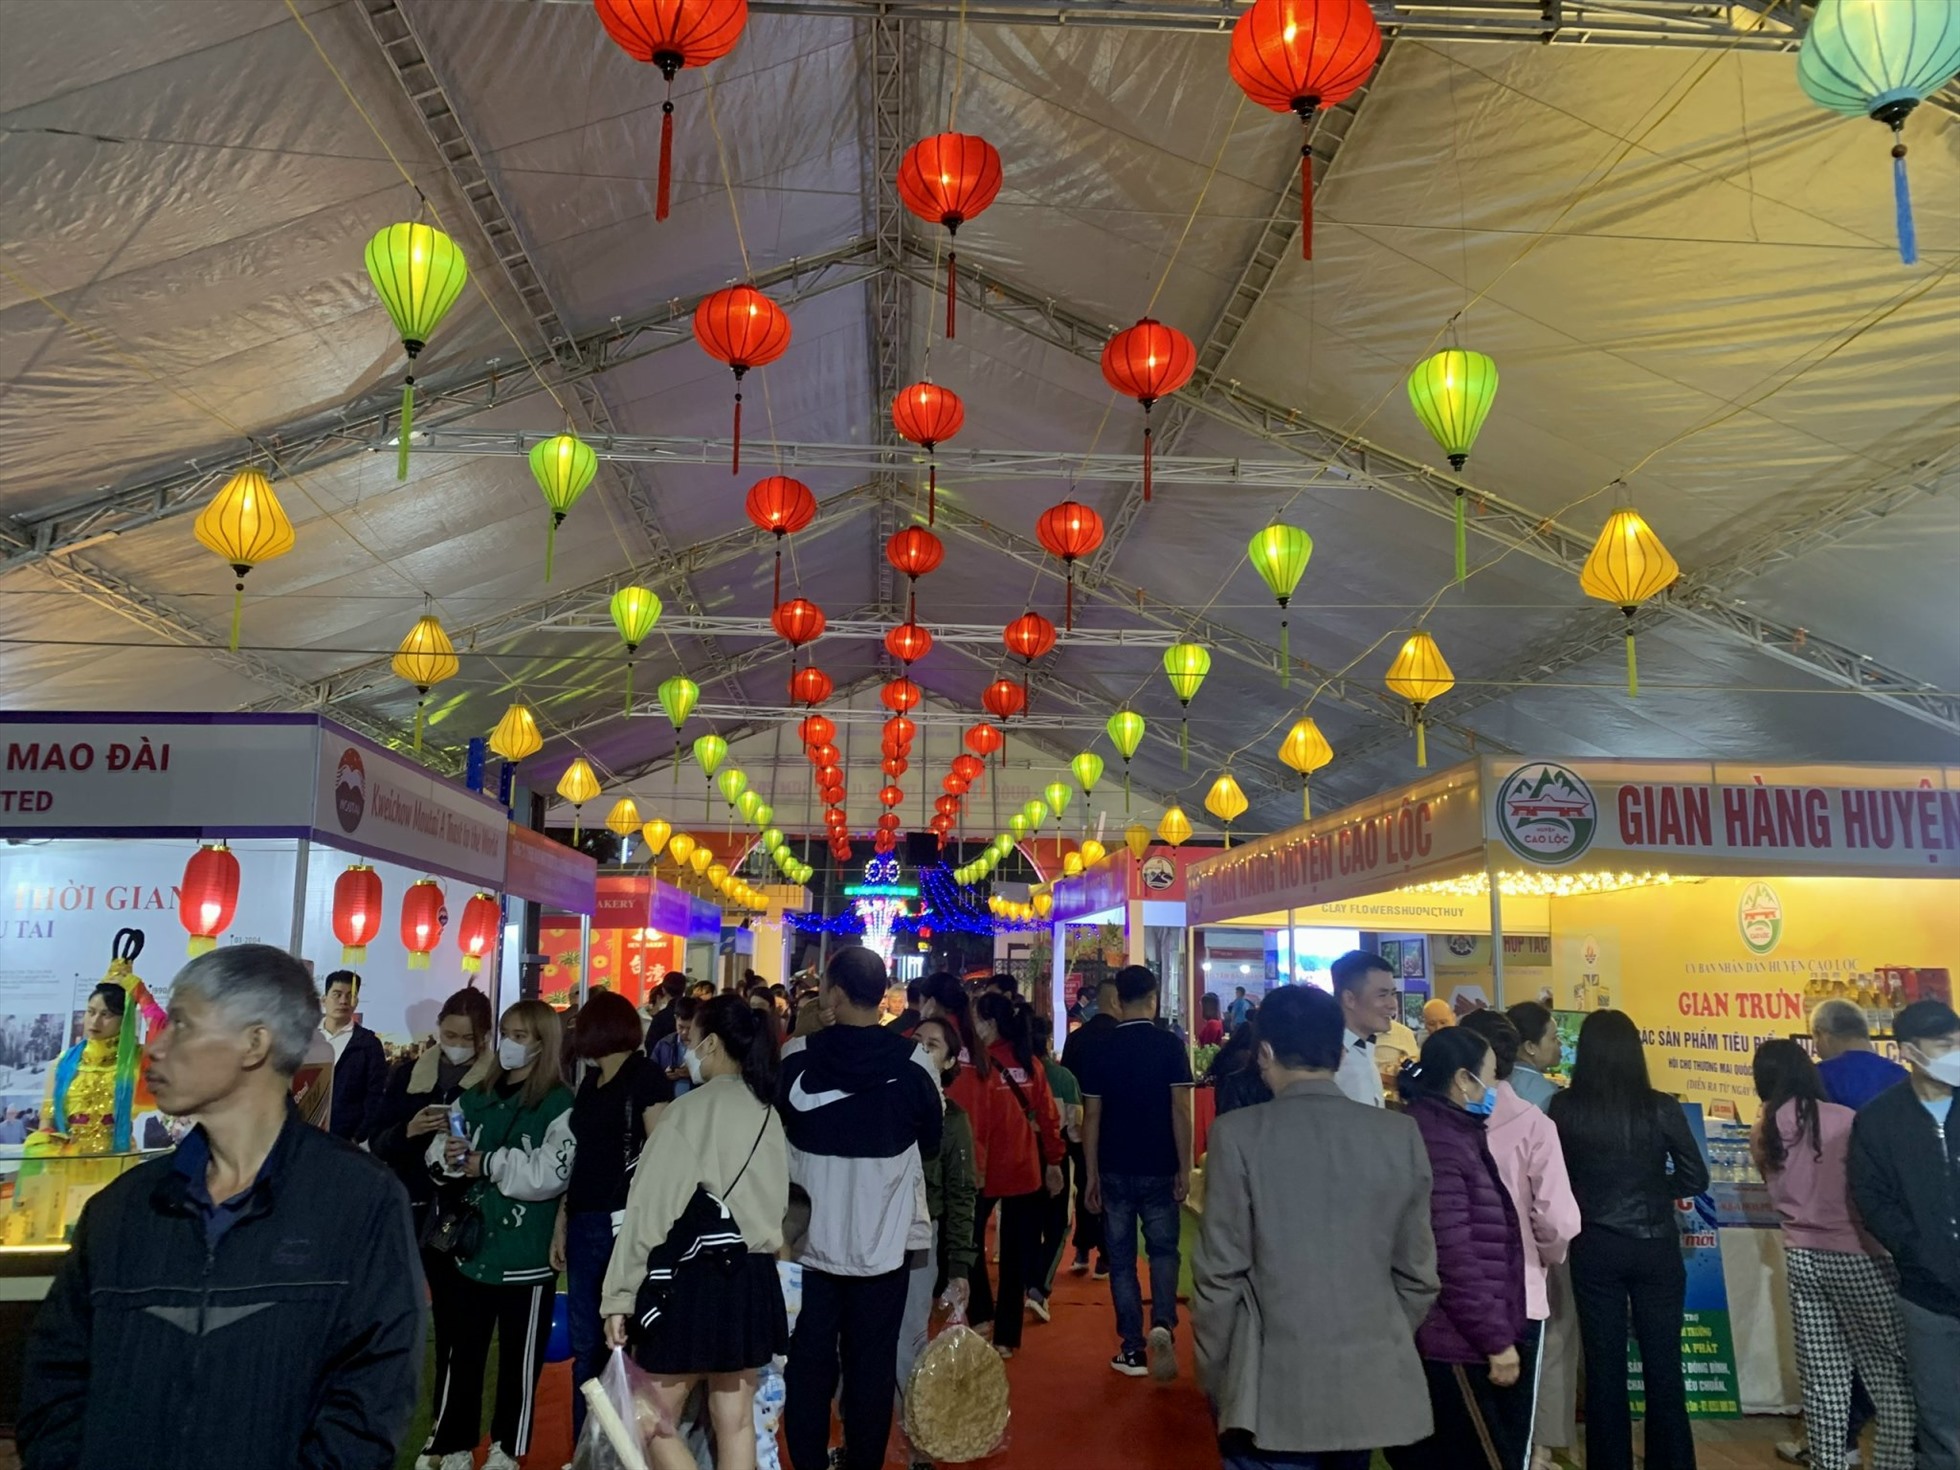 Tối 2.11, tại trung tâm Hội chợ thương mại Lạng Sơn (Số 2A, đường Tam Thanh, phường Tam Thanh, thành phố Lạng Sơn, tỉnh Lạng Sơn) đã diễn ra lễ khai mạc Hội chợ thương mại quốc tế Việt - Trung 2022.